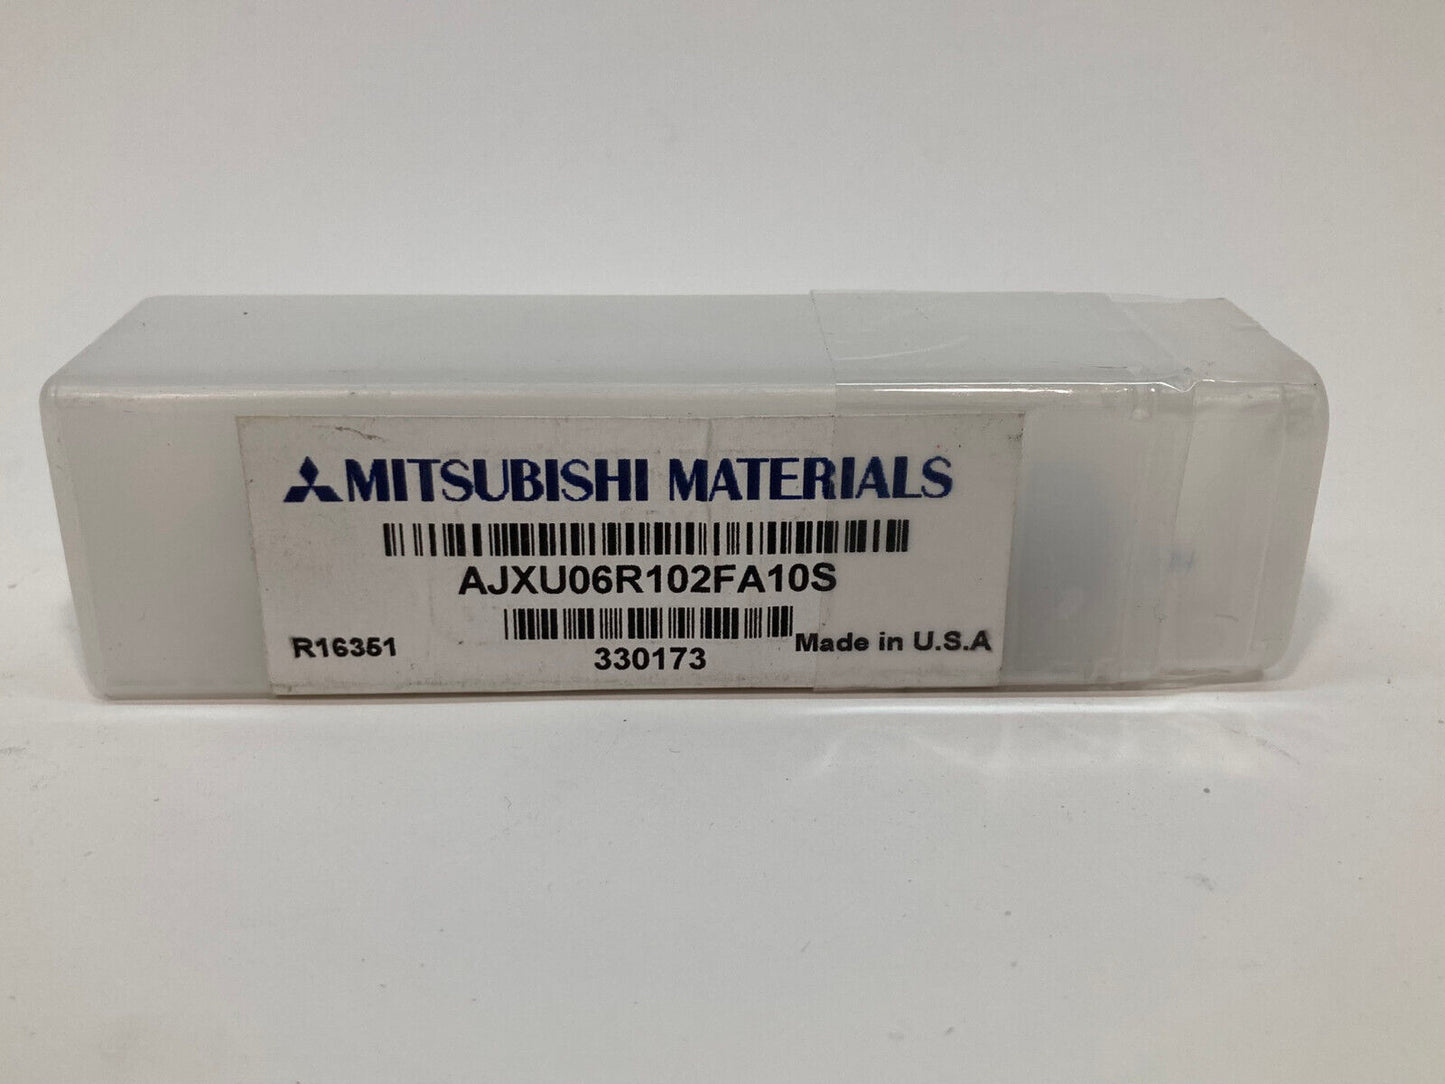 New Mitsubishi AJXU06R102FA10S 16mm insert Mill